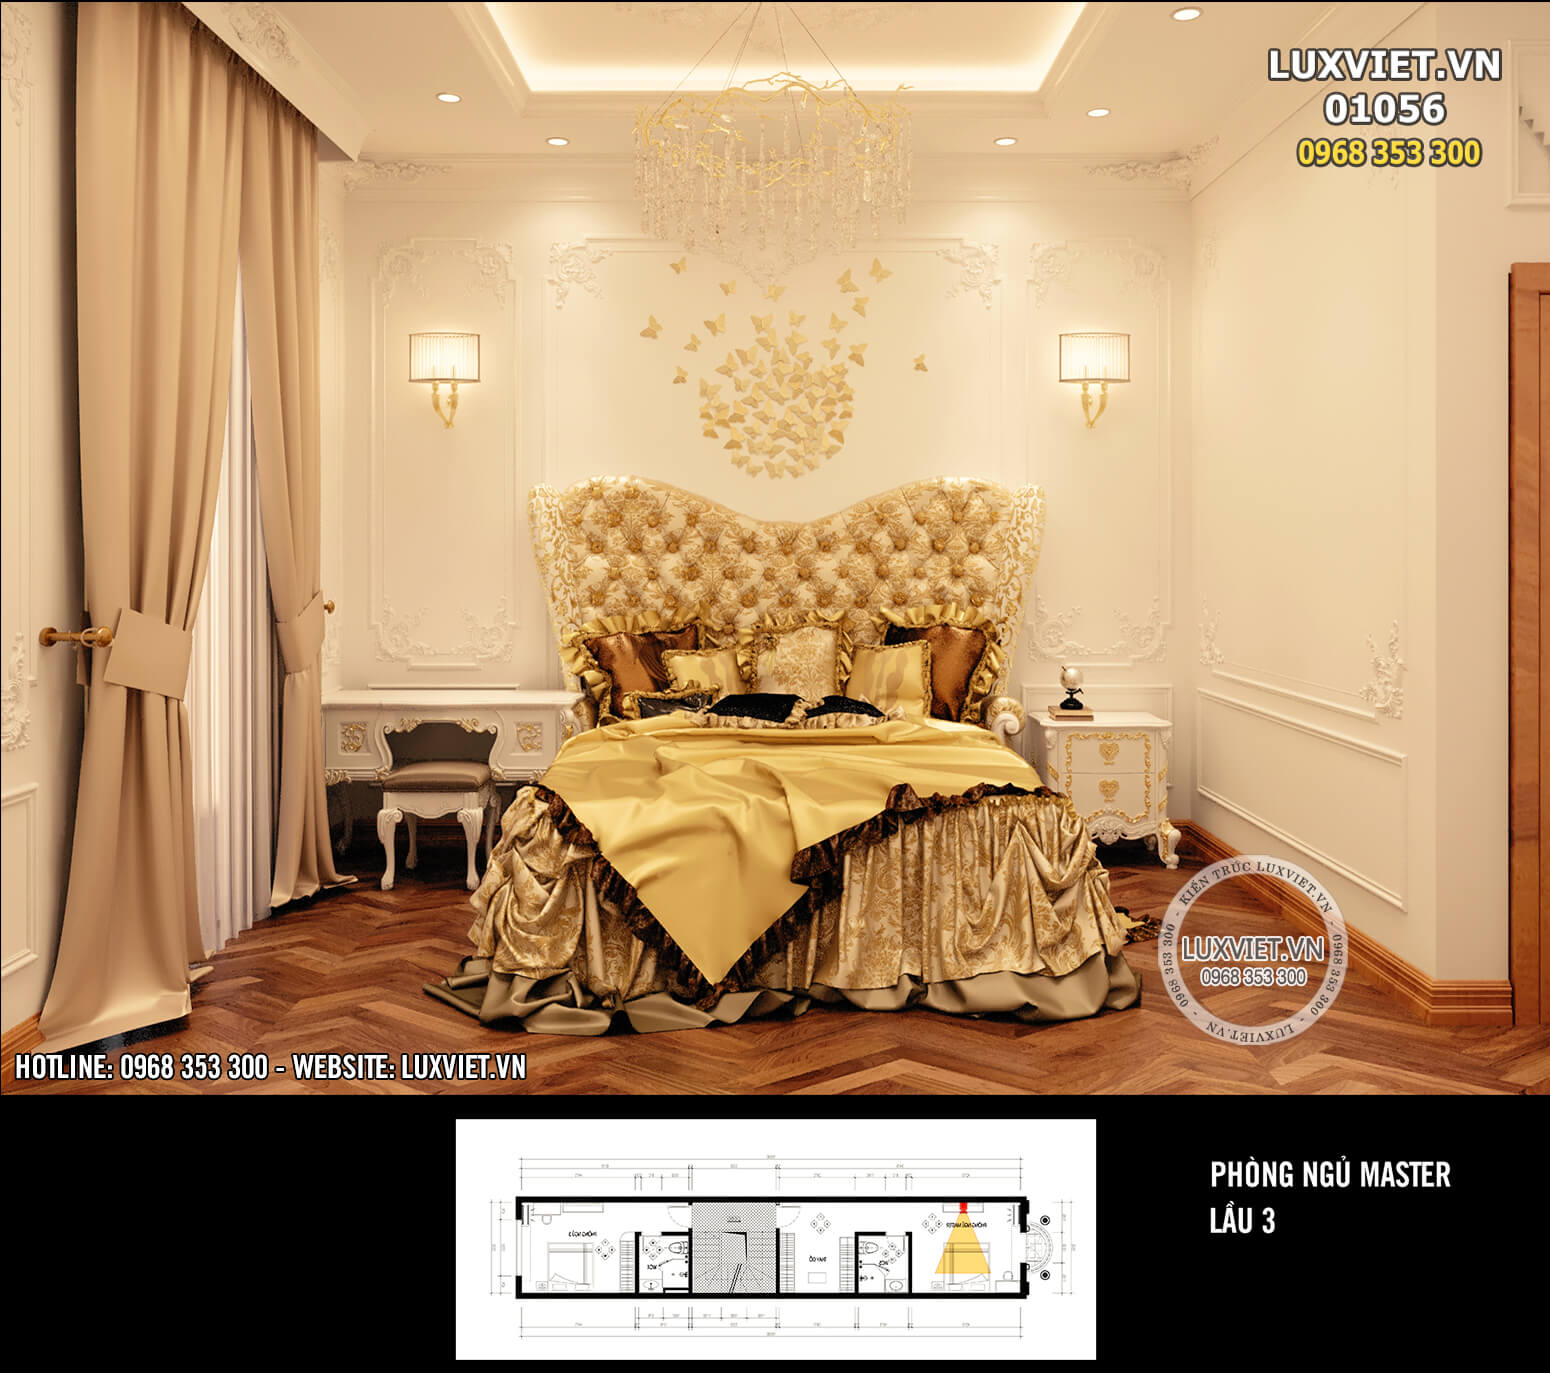 Hình ảnh: Thiết kế nội thất phòng ngủ master của nhà ống tân cổ điển - LV 01056